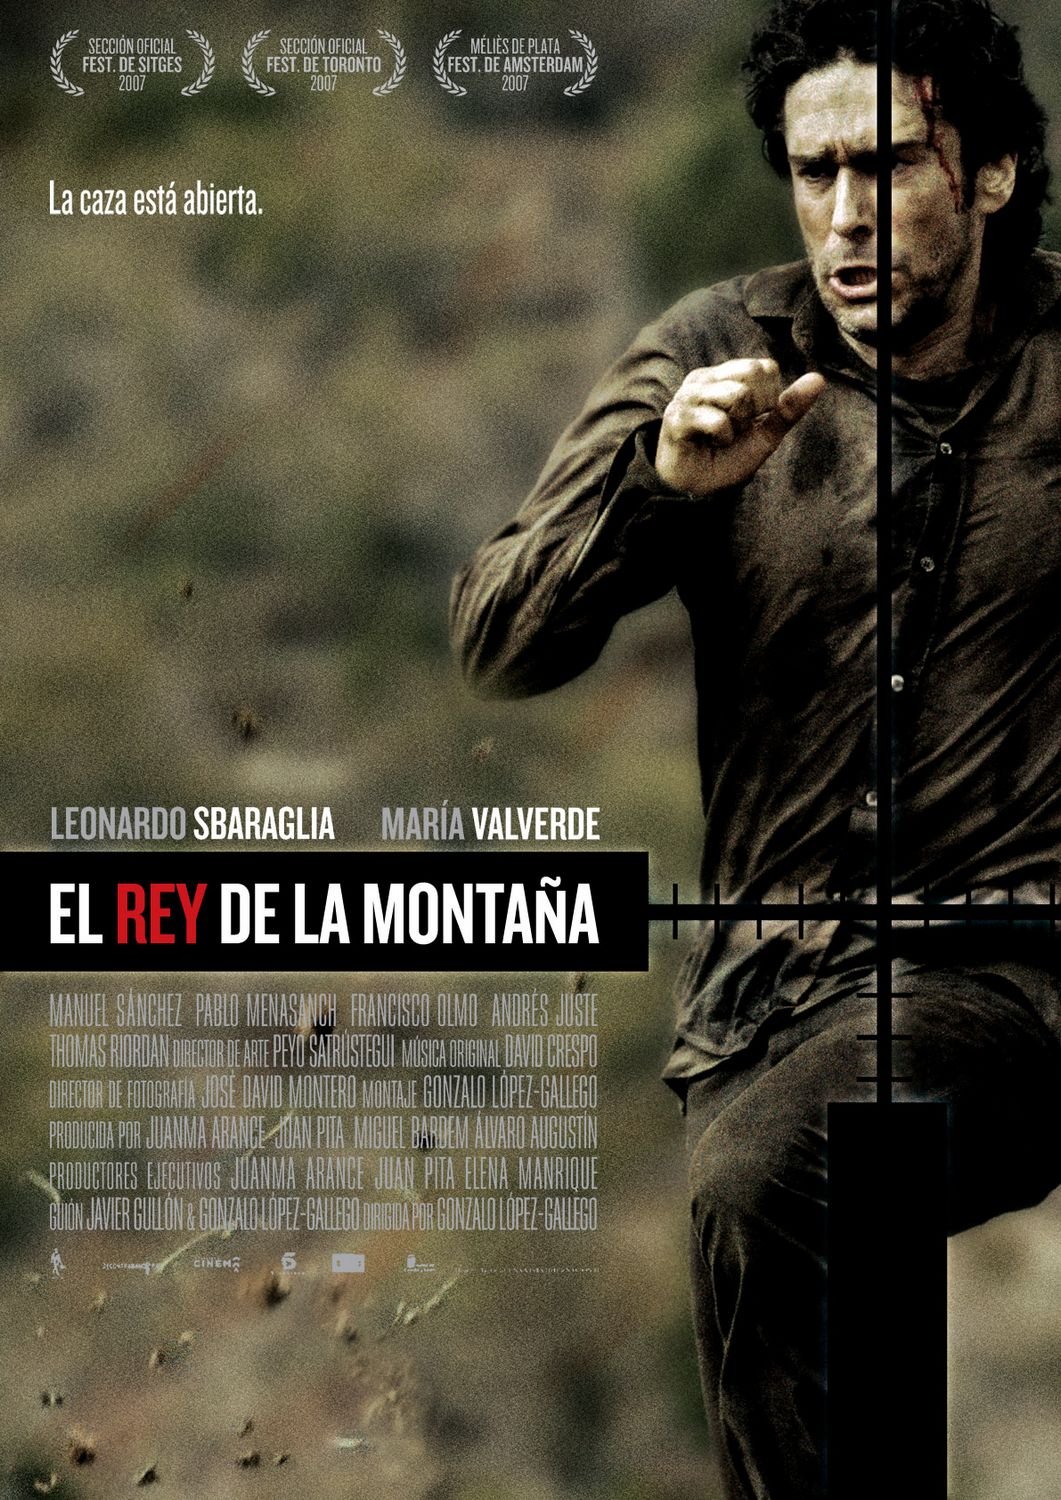 Spanish poster of the movie El rey de la montaña